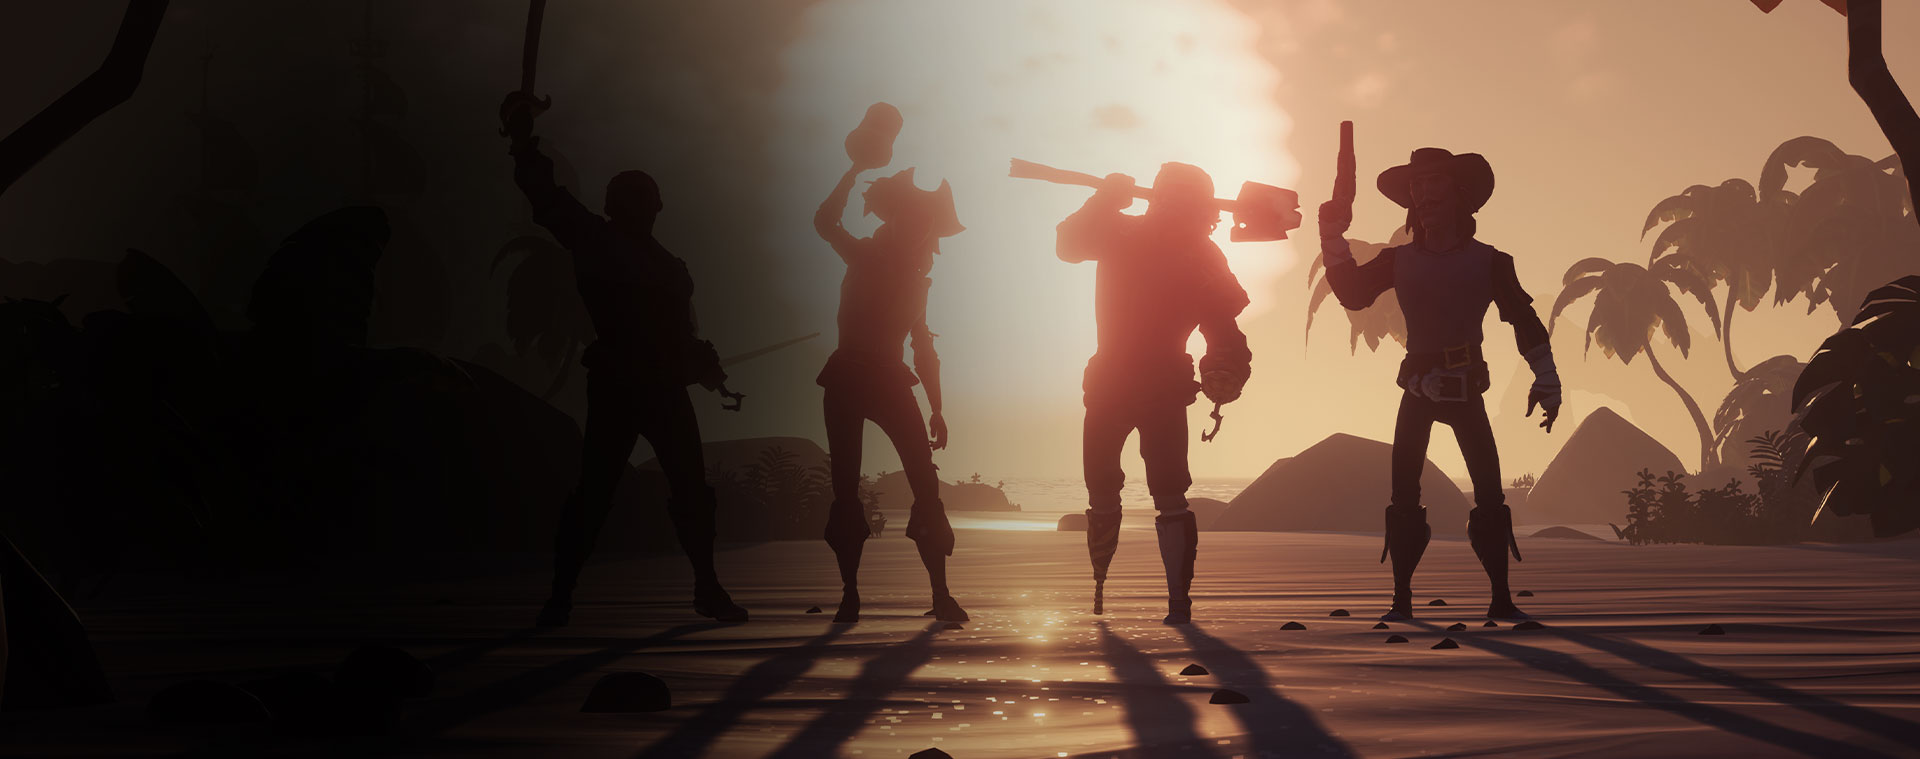 Quatrro personagens de Sea of Thieves posando em frente ao sol se pondo